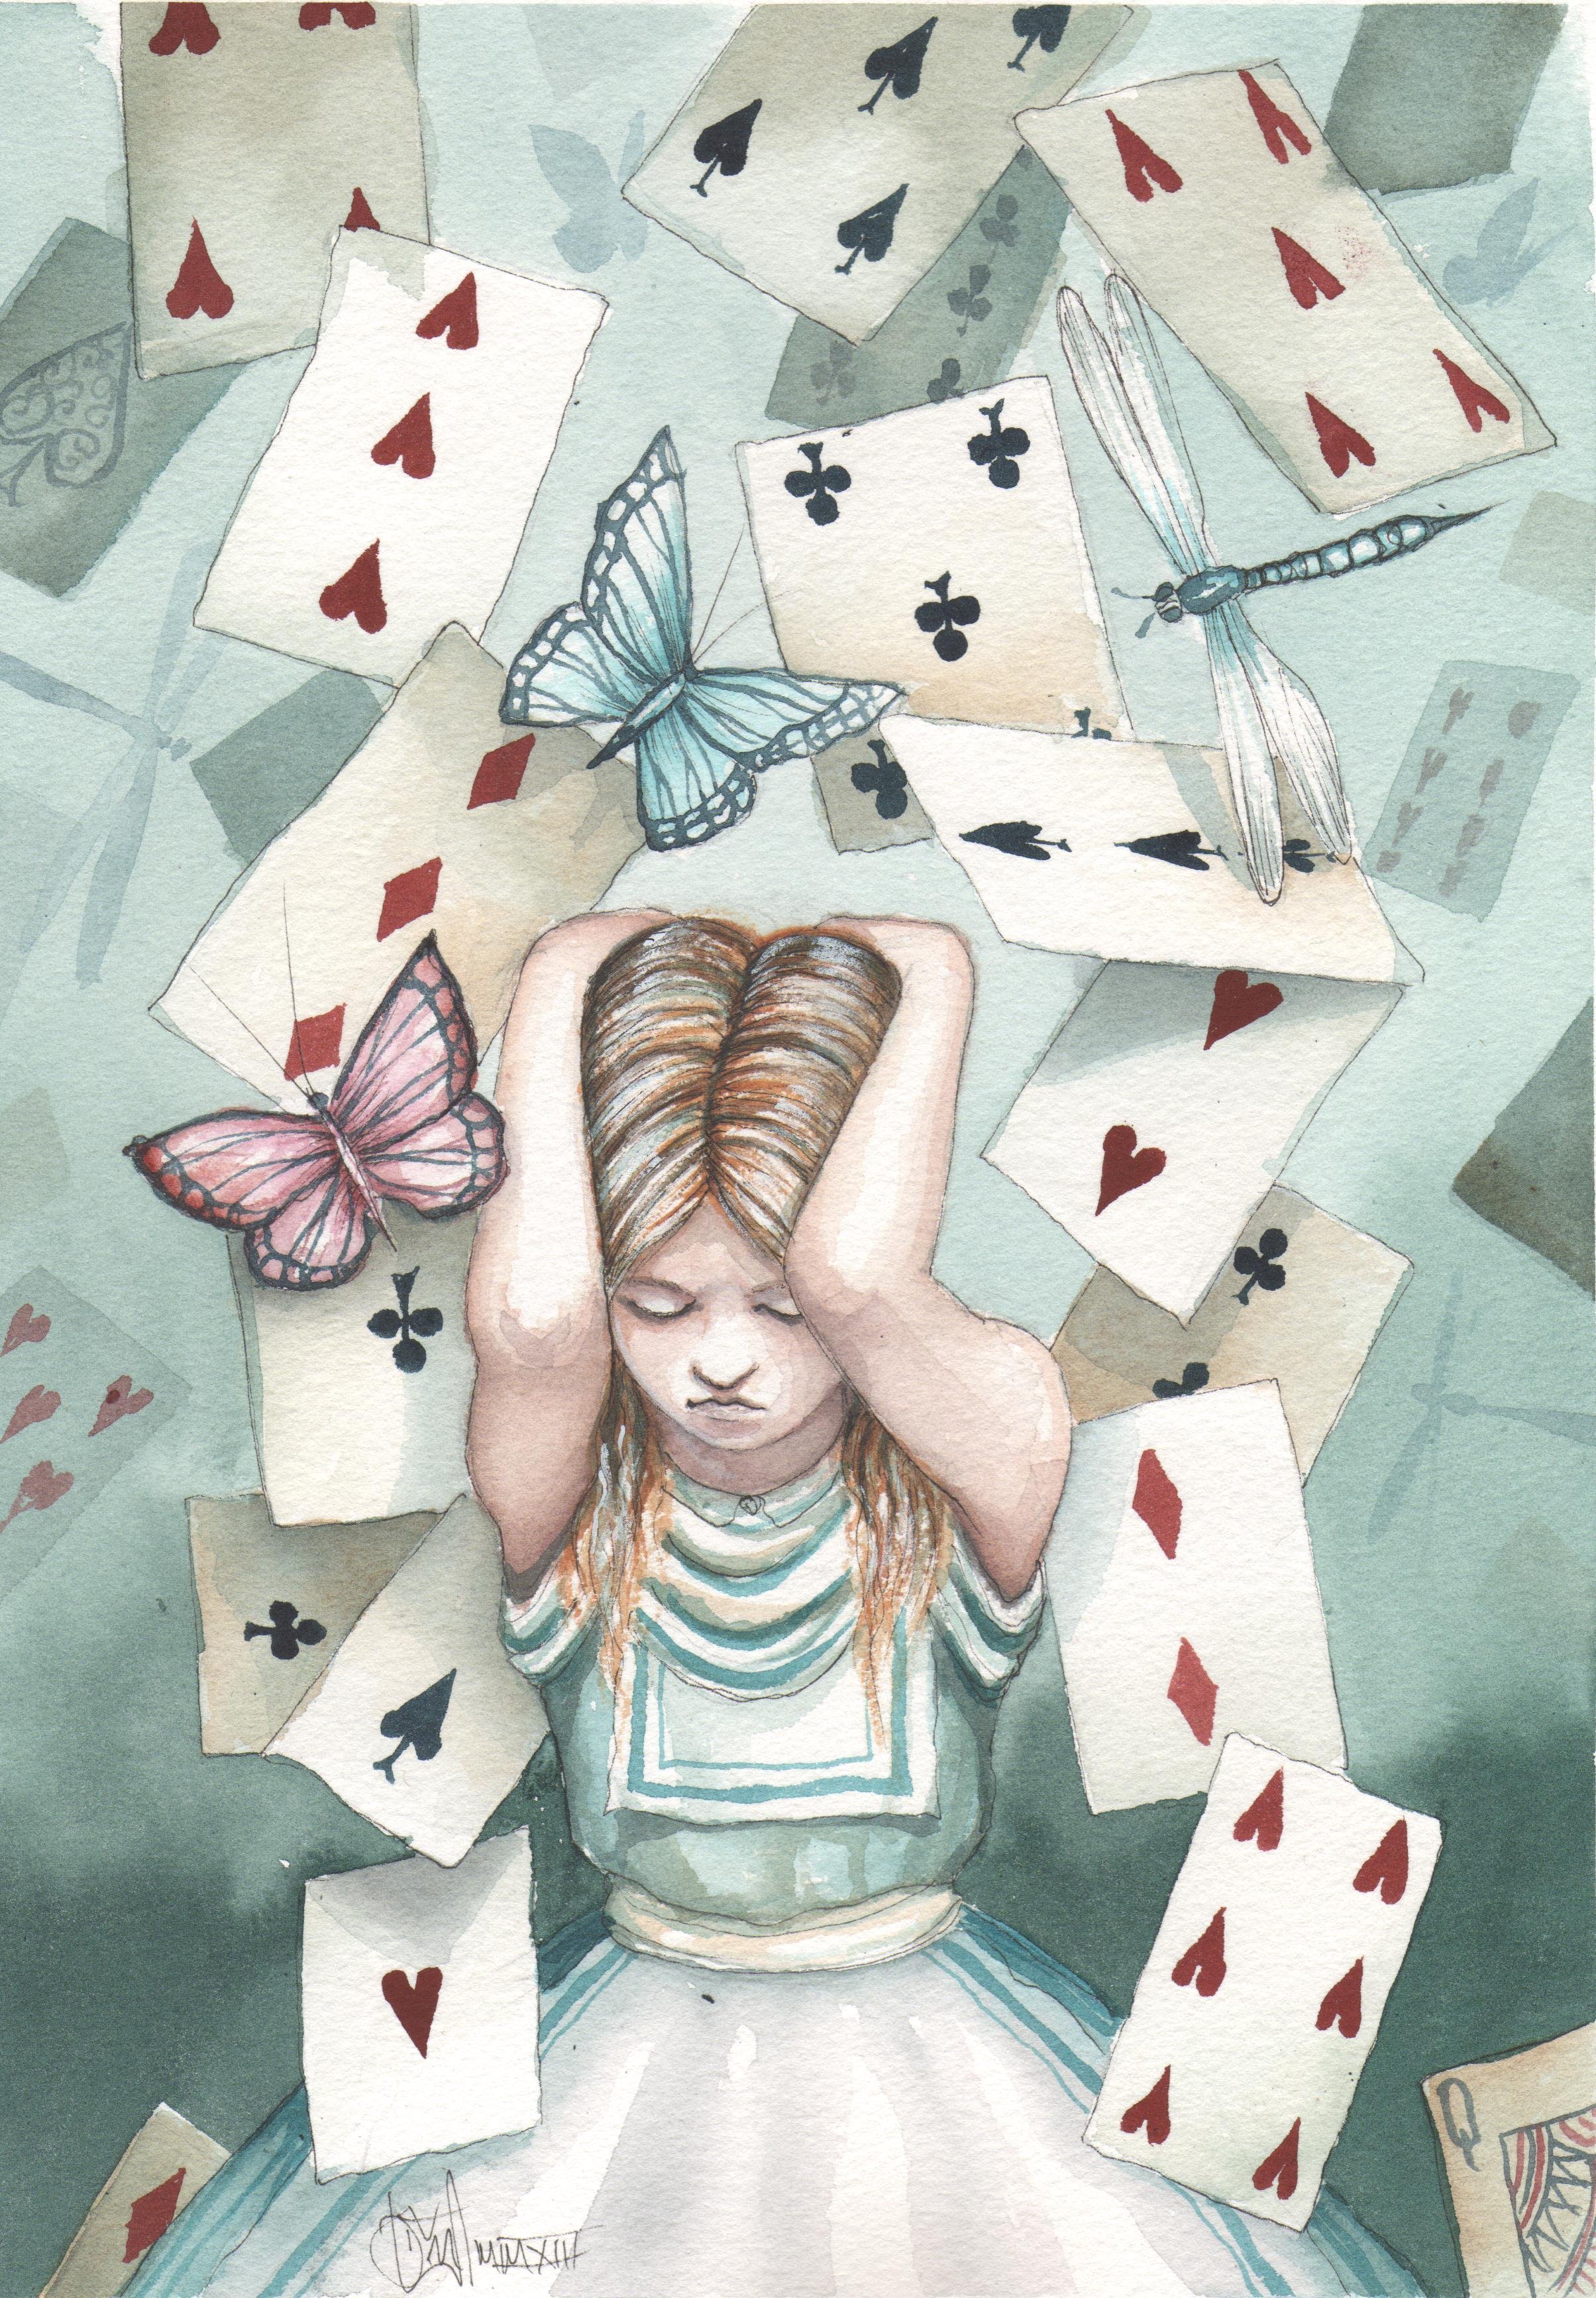 Как играть в карты с алисой. Алиса в стране чудес иллюстрации. Алиса в стране чудес иллюстрации с картами. Иллюстрации к Алисе в стране чудес Доминик Мерфи. Алисия Вондерленд.